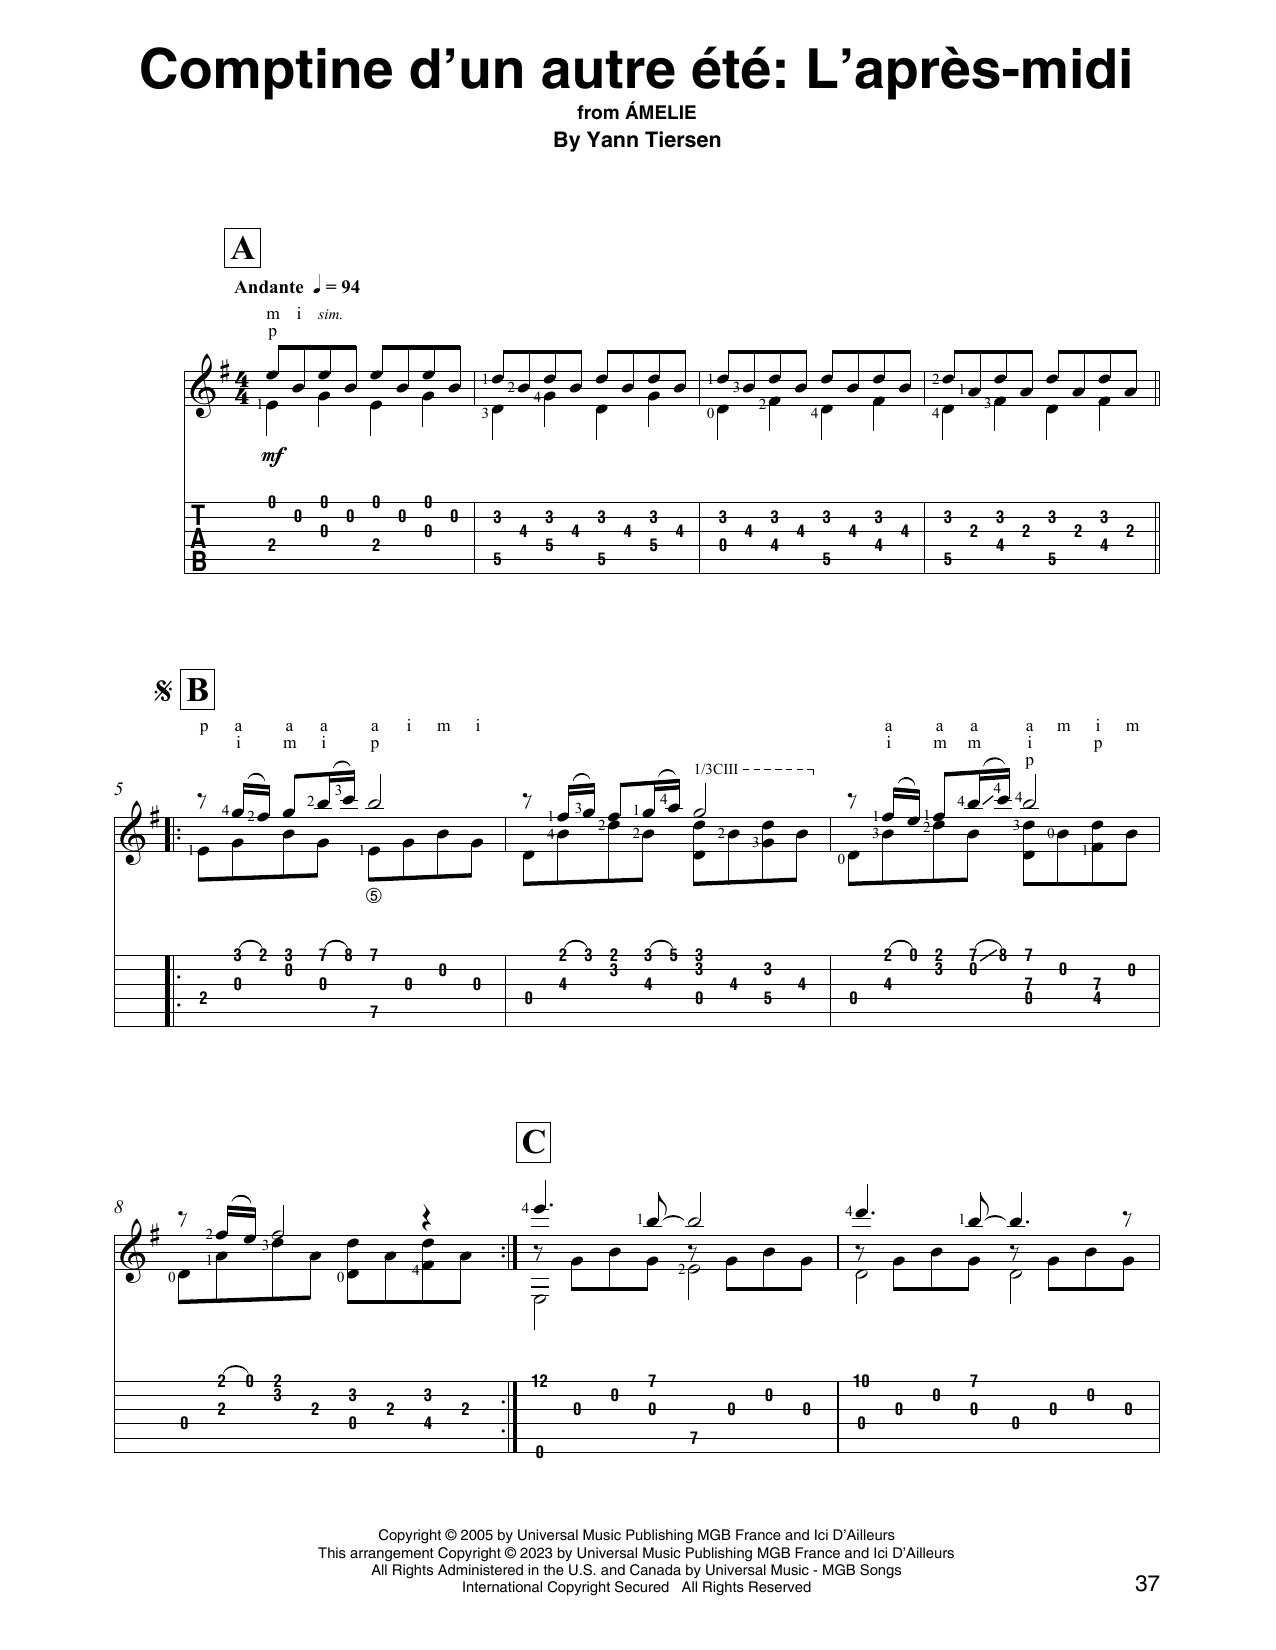 Yann Tiersen Comptine d'un autre été: L'après-midi (from Amelie) sheet music notes and chords arranged for Solo Guitar